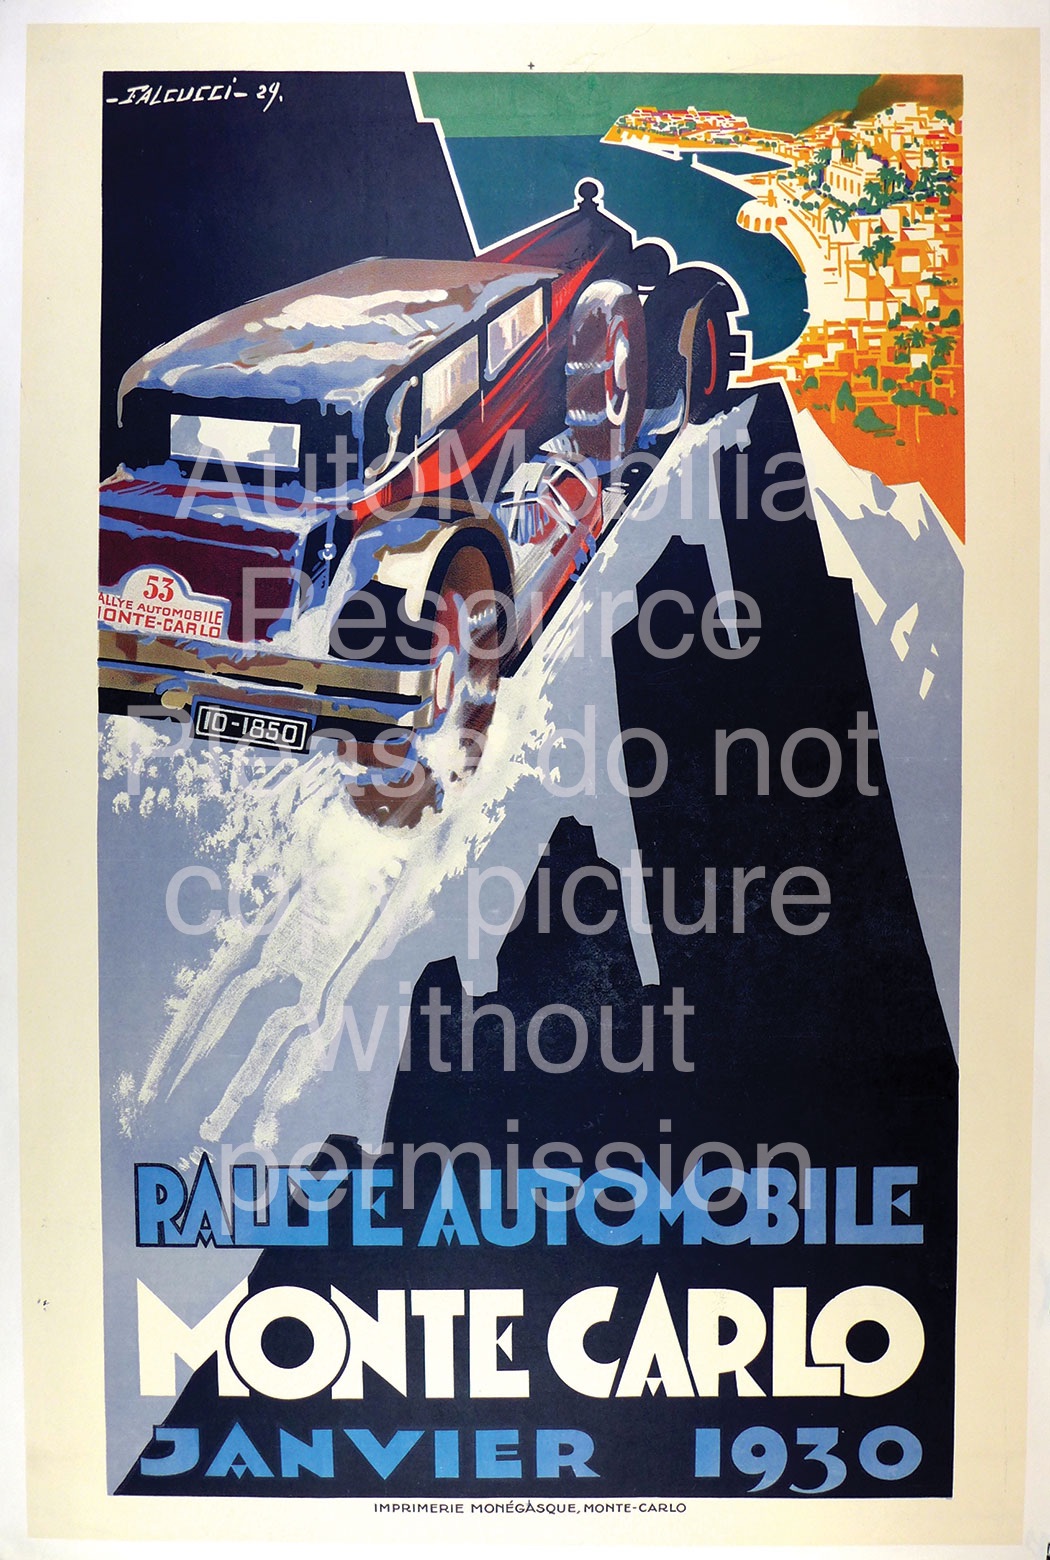 Monte Carlo Janvier 1930 Vintage Poster